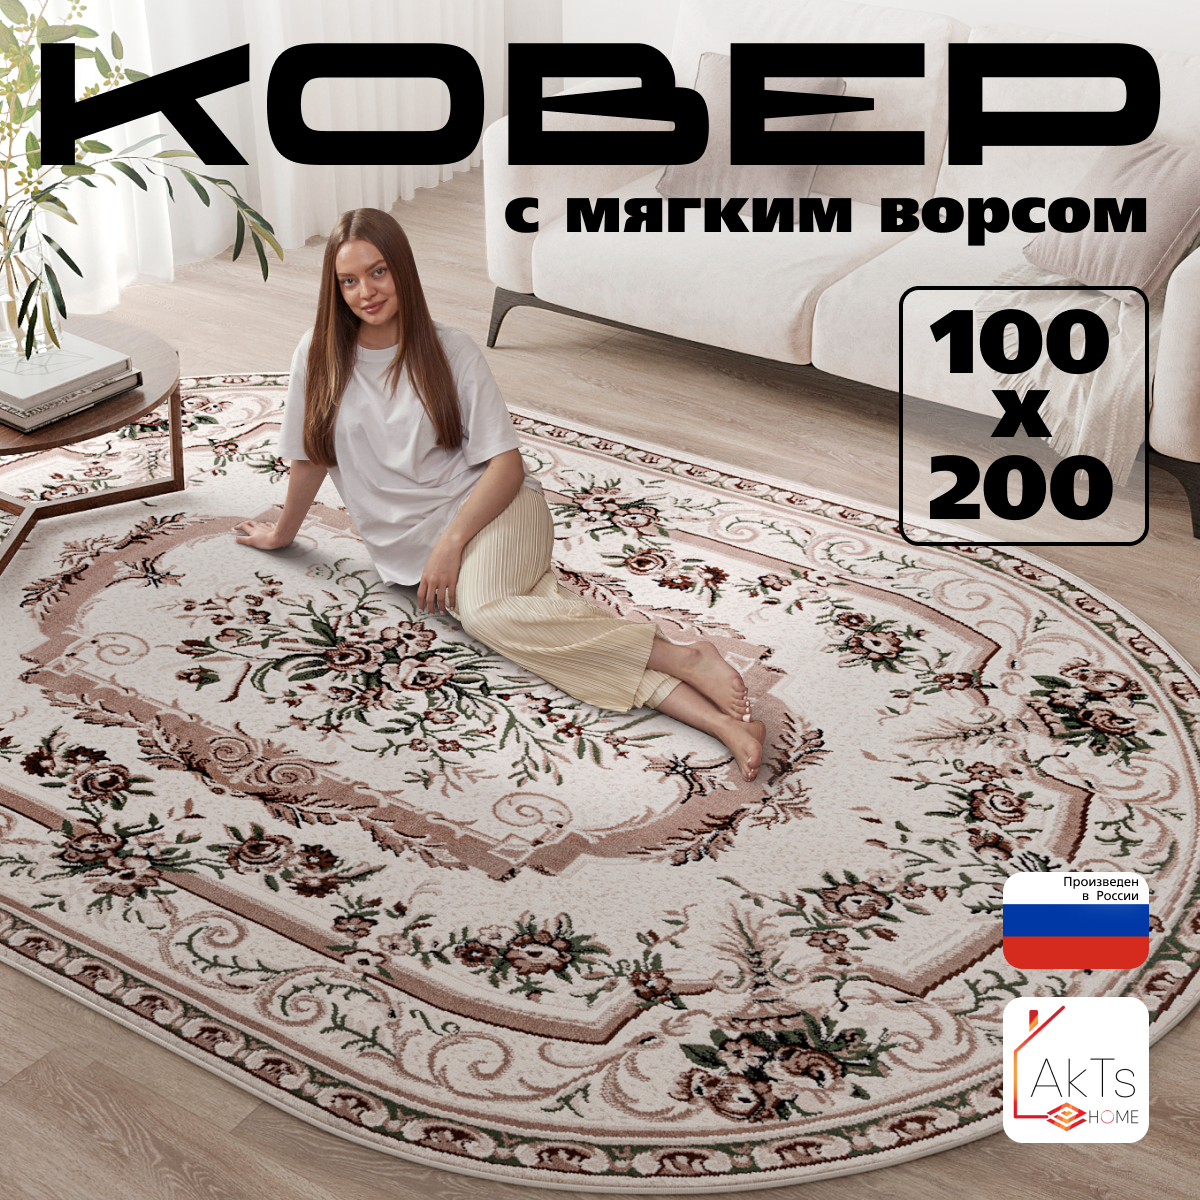 Российский овальный ковер на пол 100 на 200 см в гостиную, зал, спальню, кухню, детскую, прихожую, кабинет, комнату